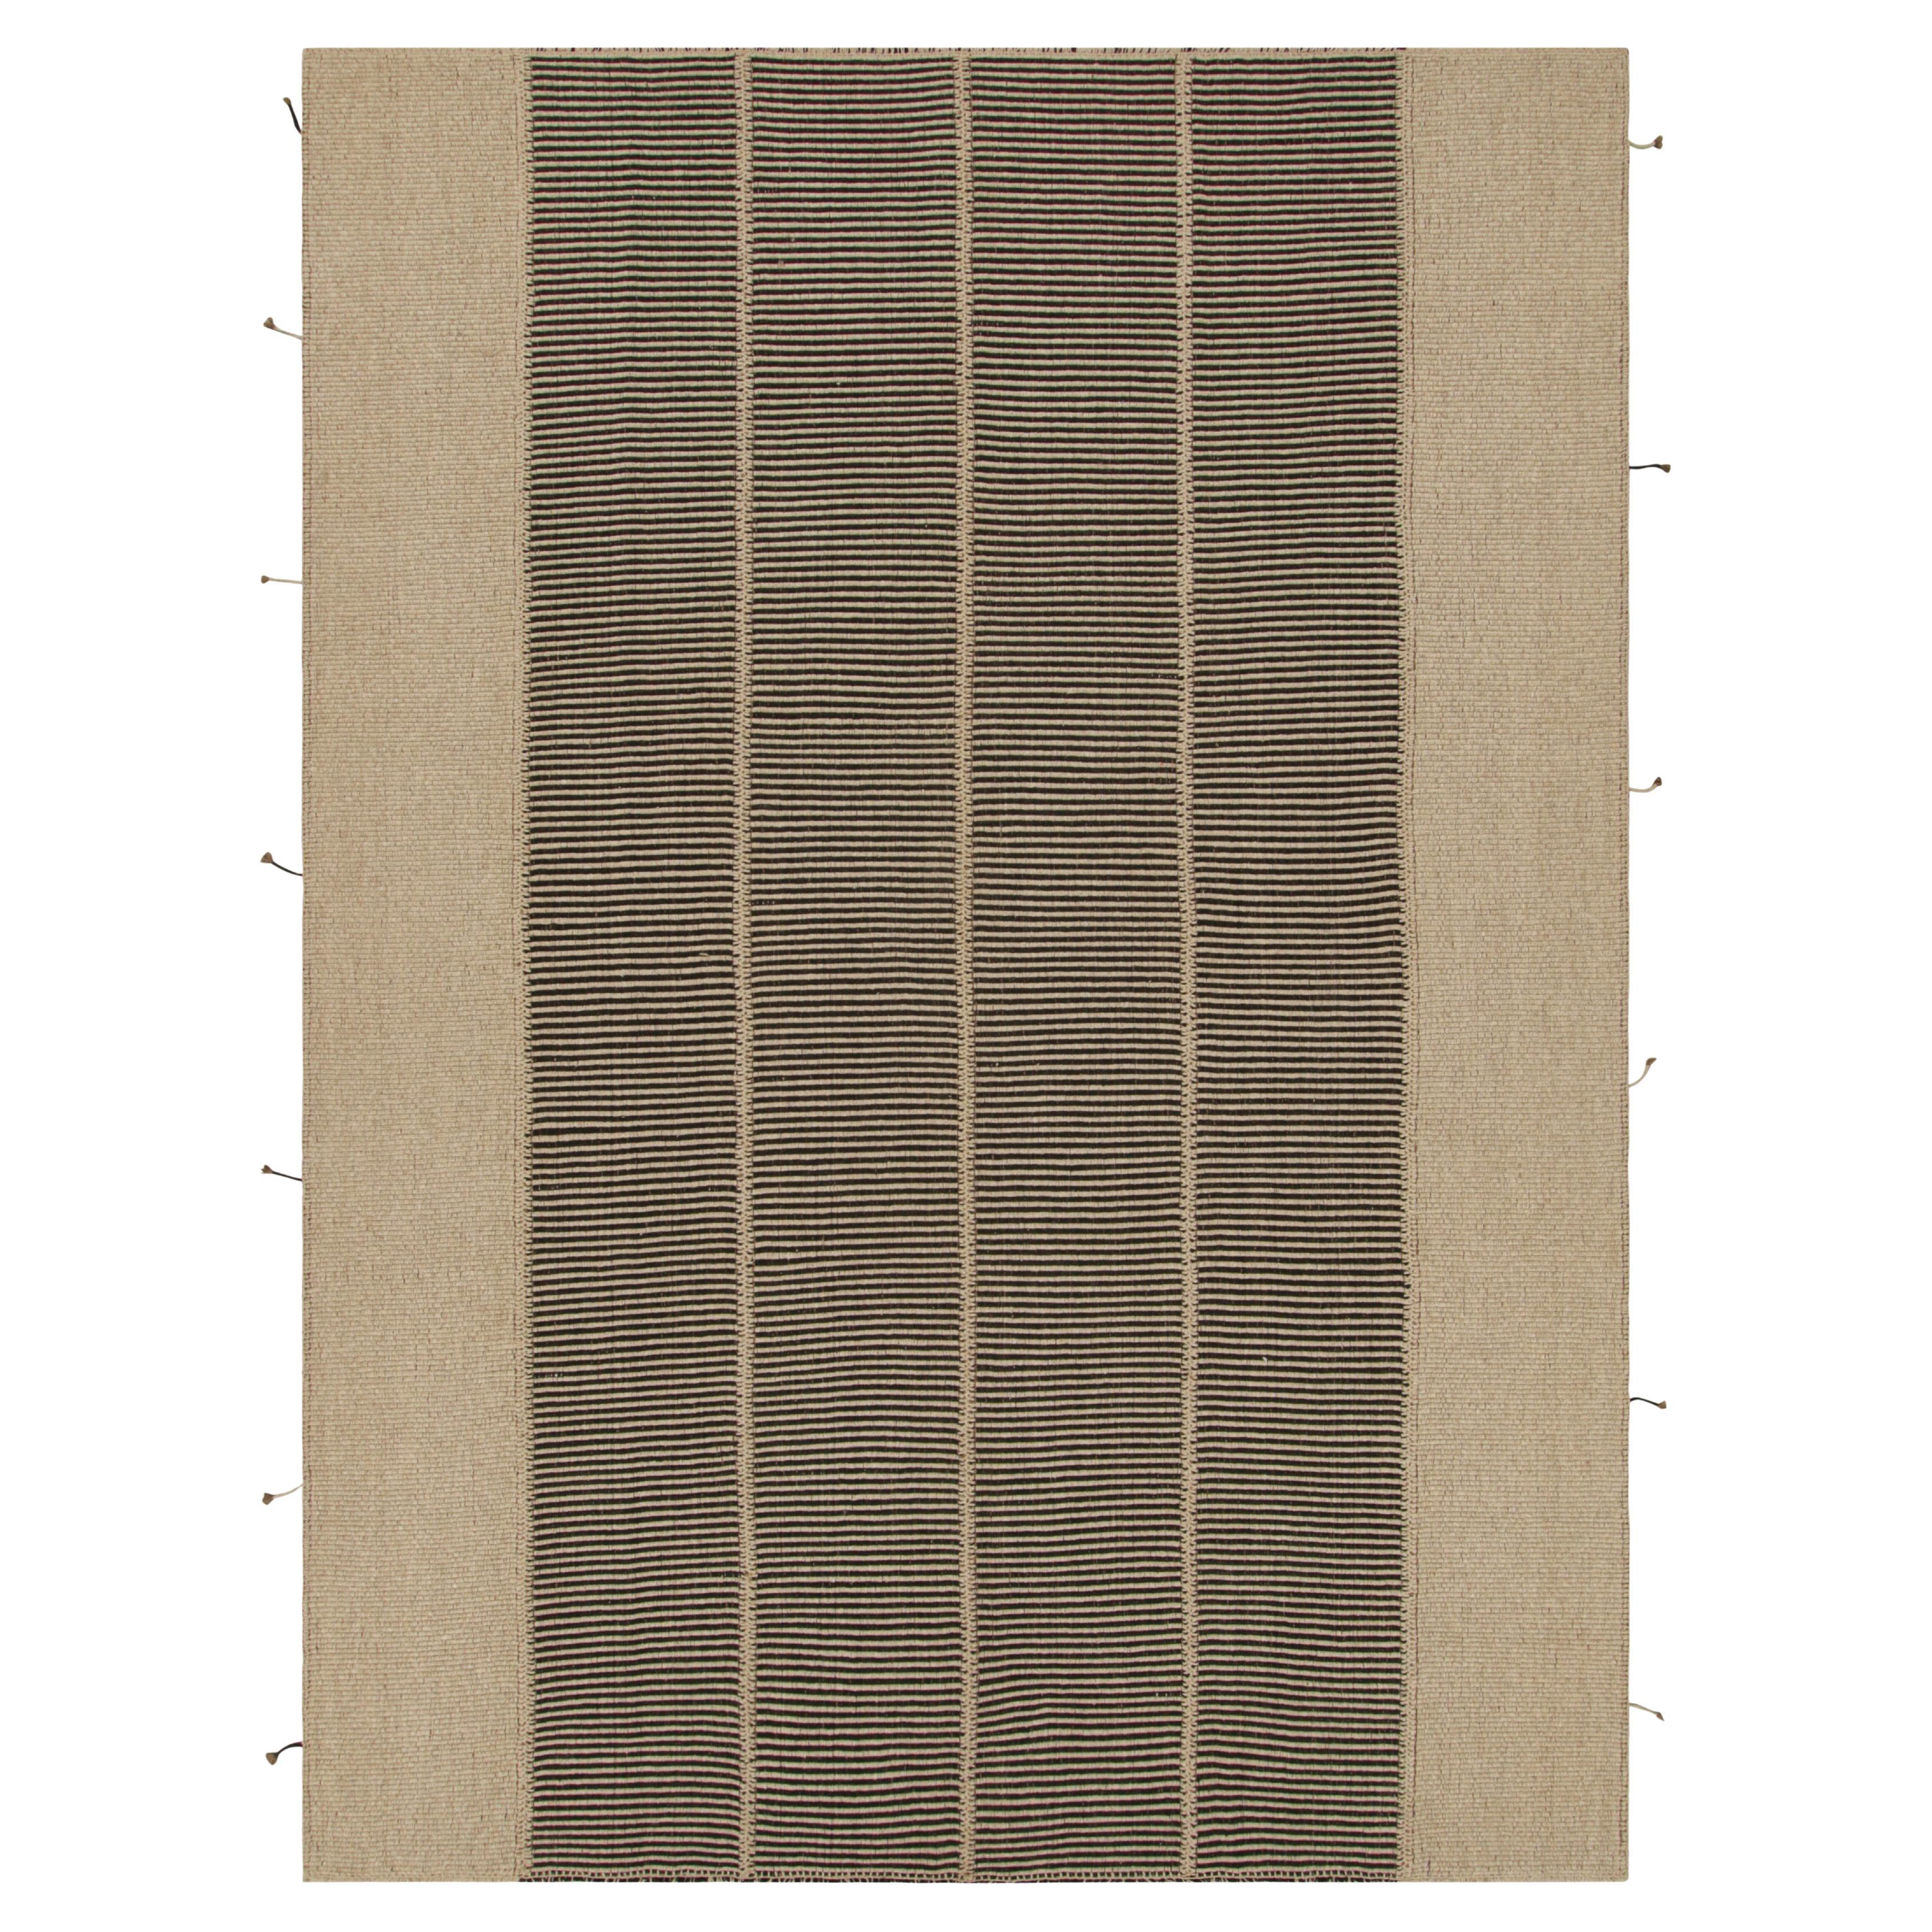 Rug & Kilim's Contemporary Kilim in Black and Beige Textural Stripes (Kilim contemporain à rayures texturées noires et beiges) 